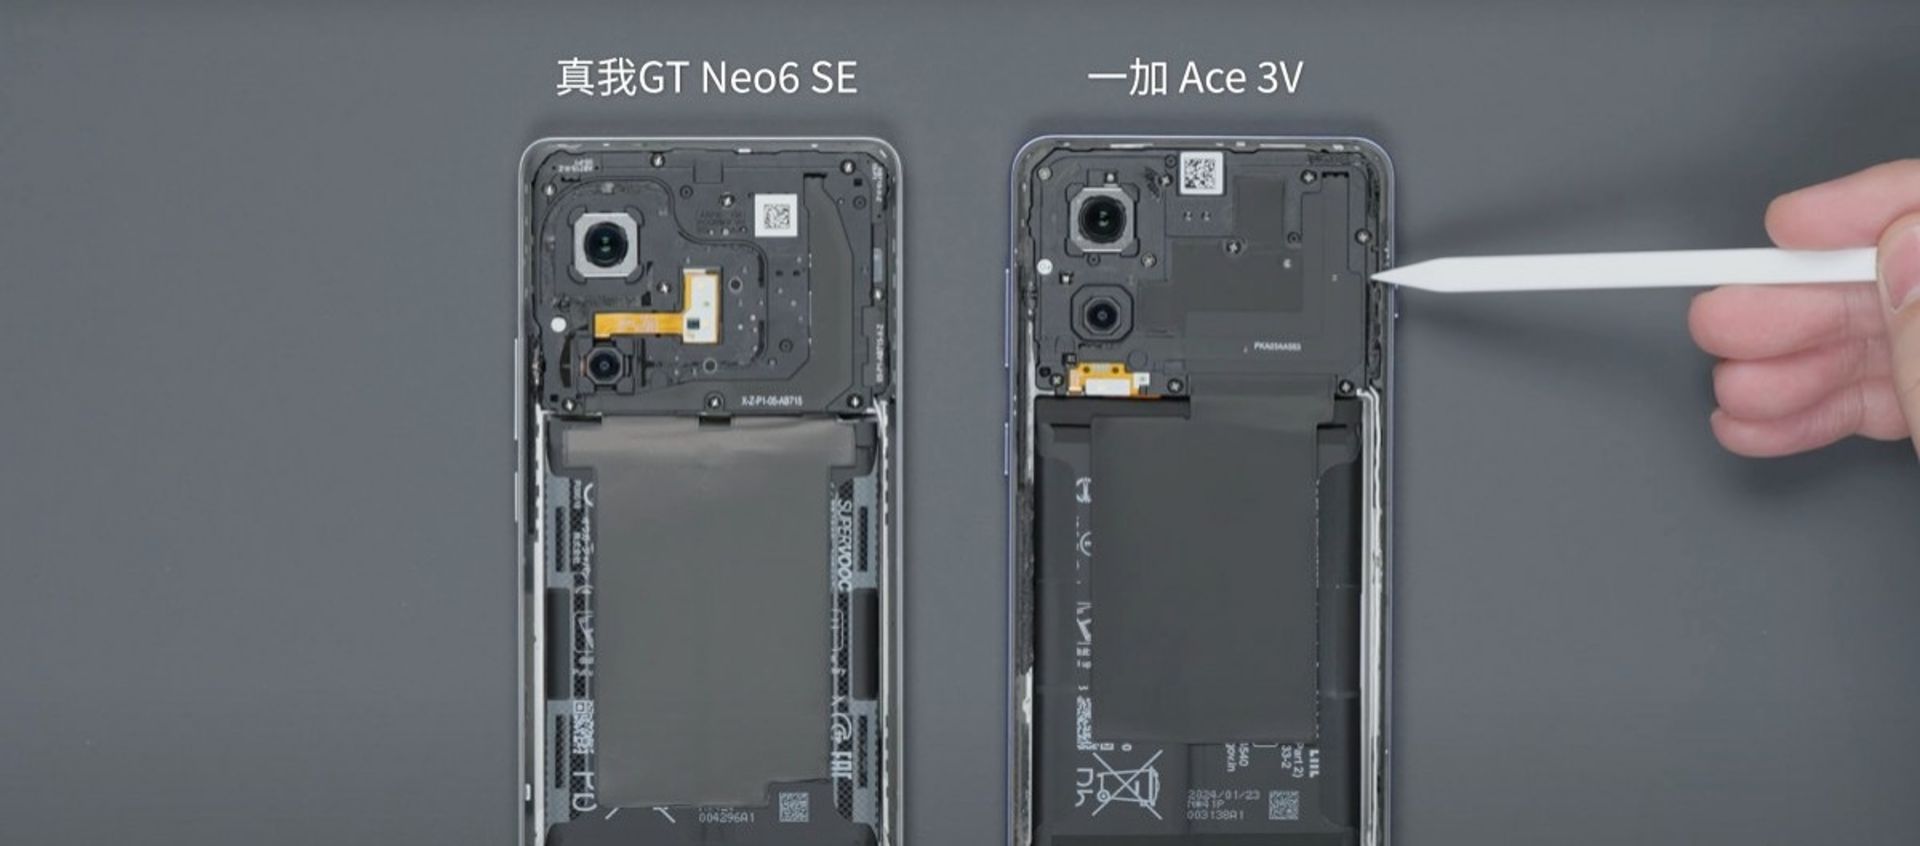 ساختار کلی گوشی‌های ریلمی GT Neo6 SE و وان‌پلاس ایس 3V